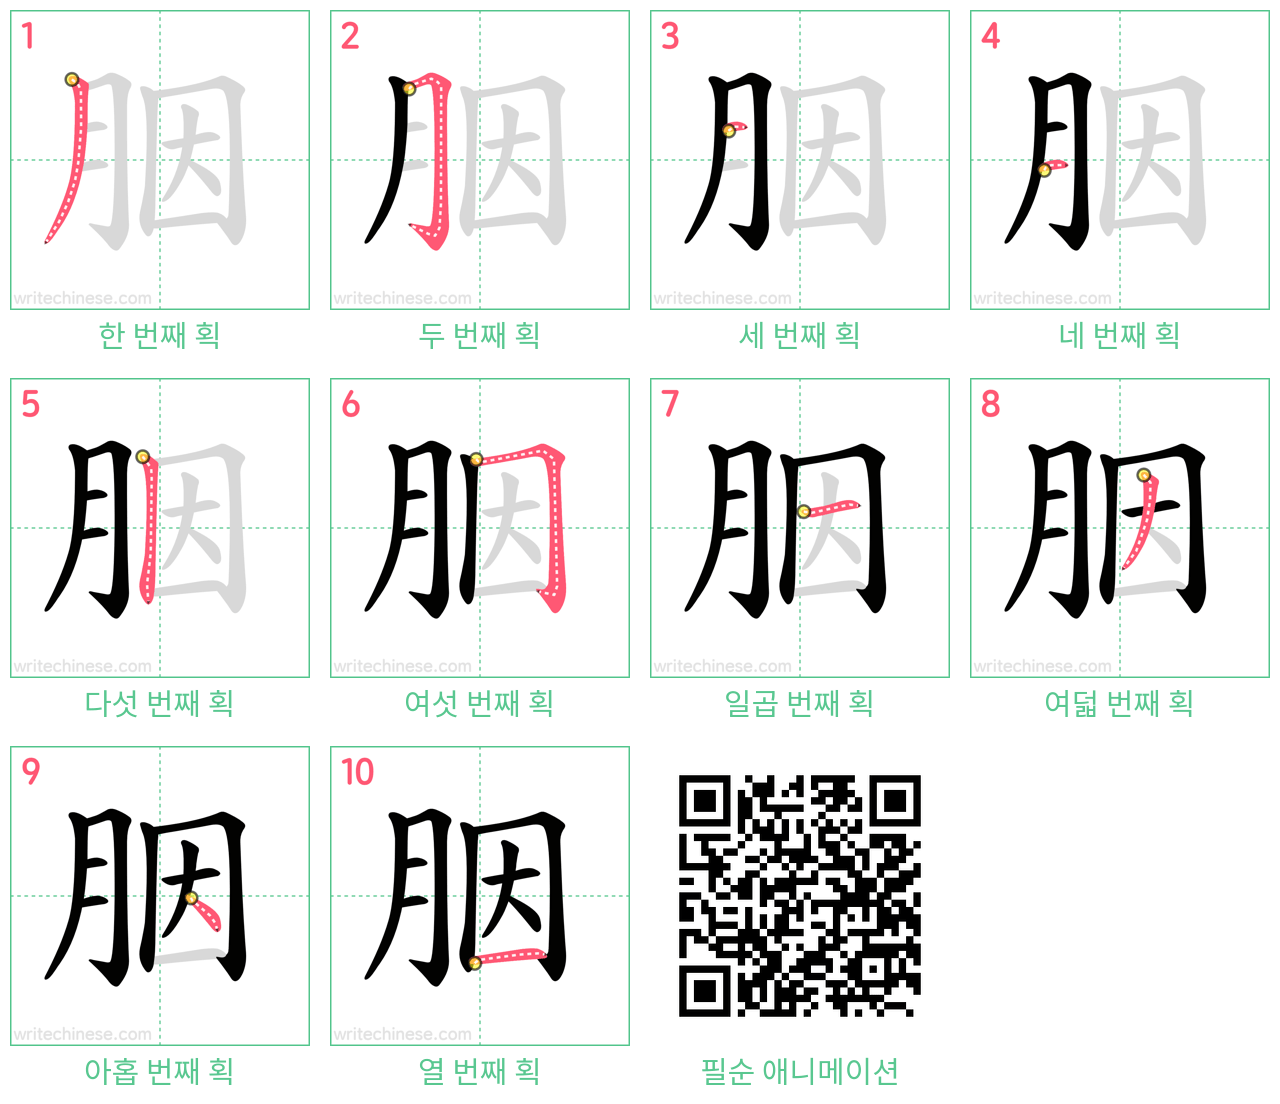 胭 step-by-step stroke order diagrams